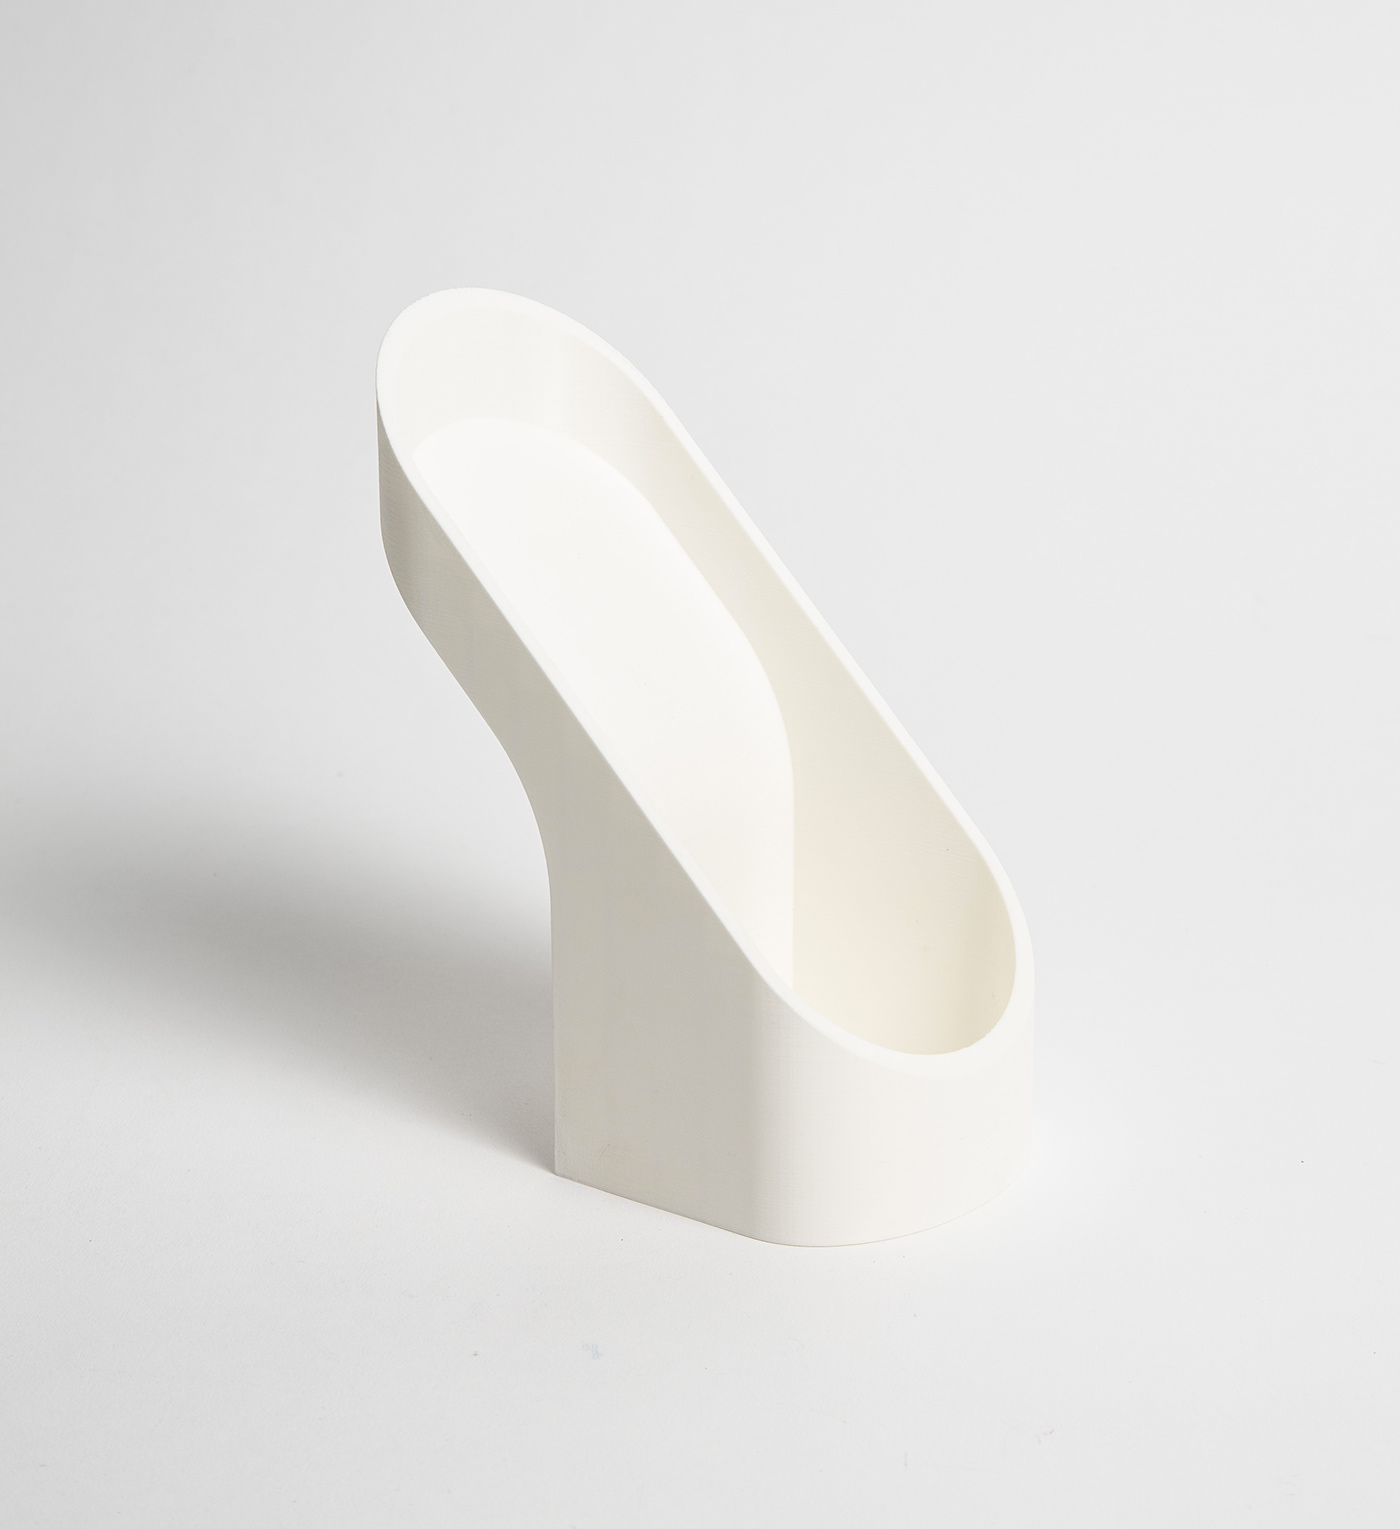 ceramics  wood product design  industrial design  speaker sound music minimalist craftsmanship design